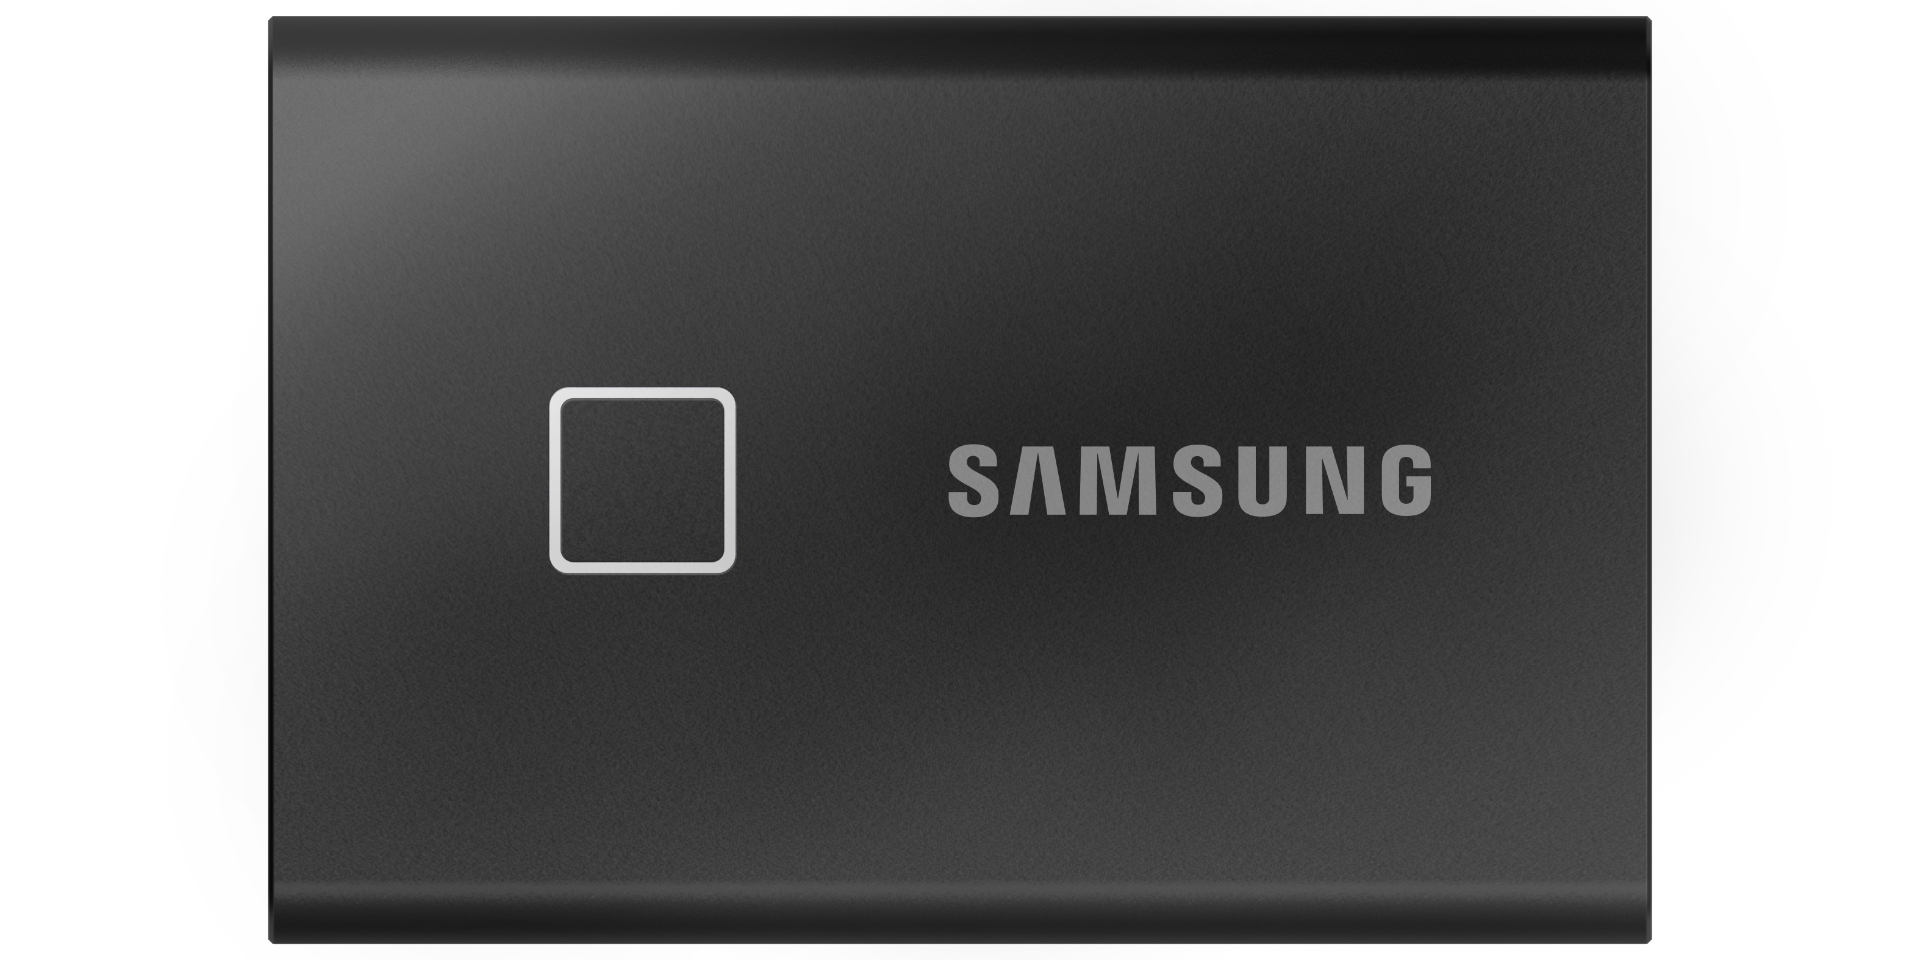 Samsung giới thiệu ổ cứng di động SSD T7 Touch tích hợp khóa vân tay, tốc độ nhanh hơn gấp đôi